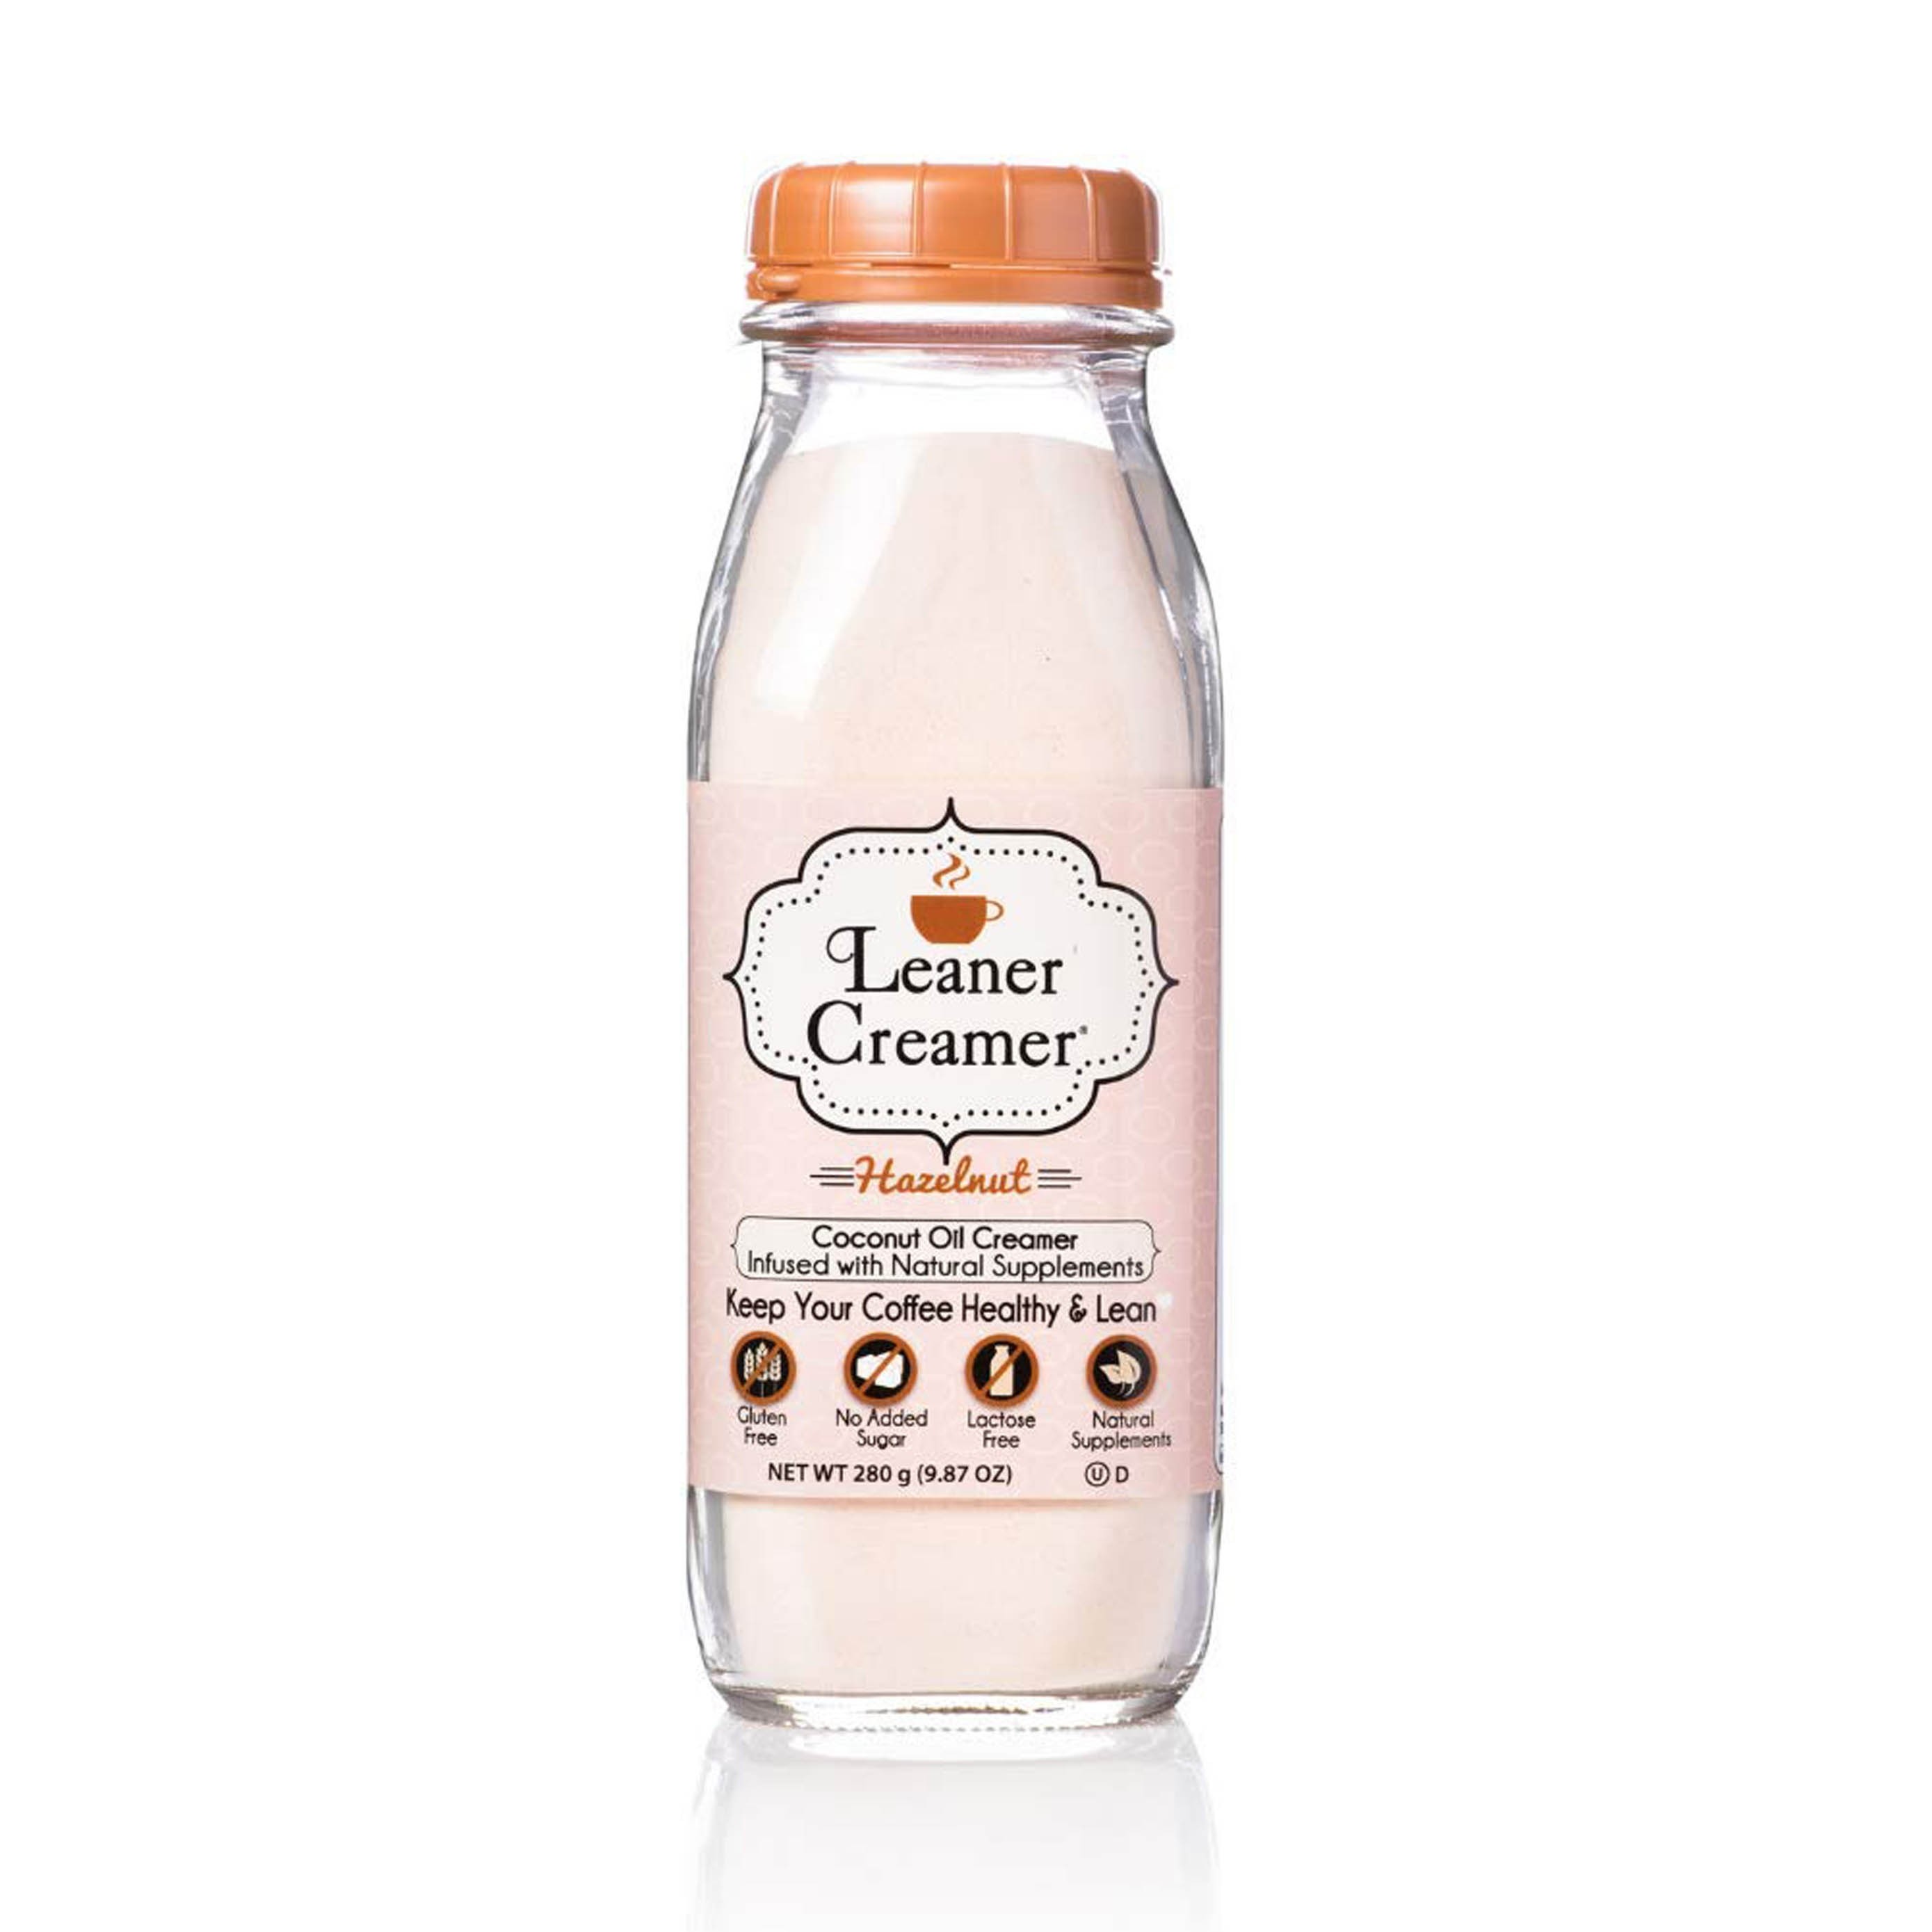 Leaner Creamer 美國椰子油榛子非乳咖啡素奶粉 | ORIGINAL HAZELNUT COCONUT OIL CREAMER